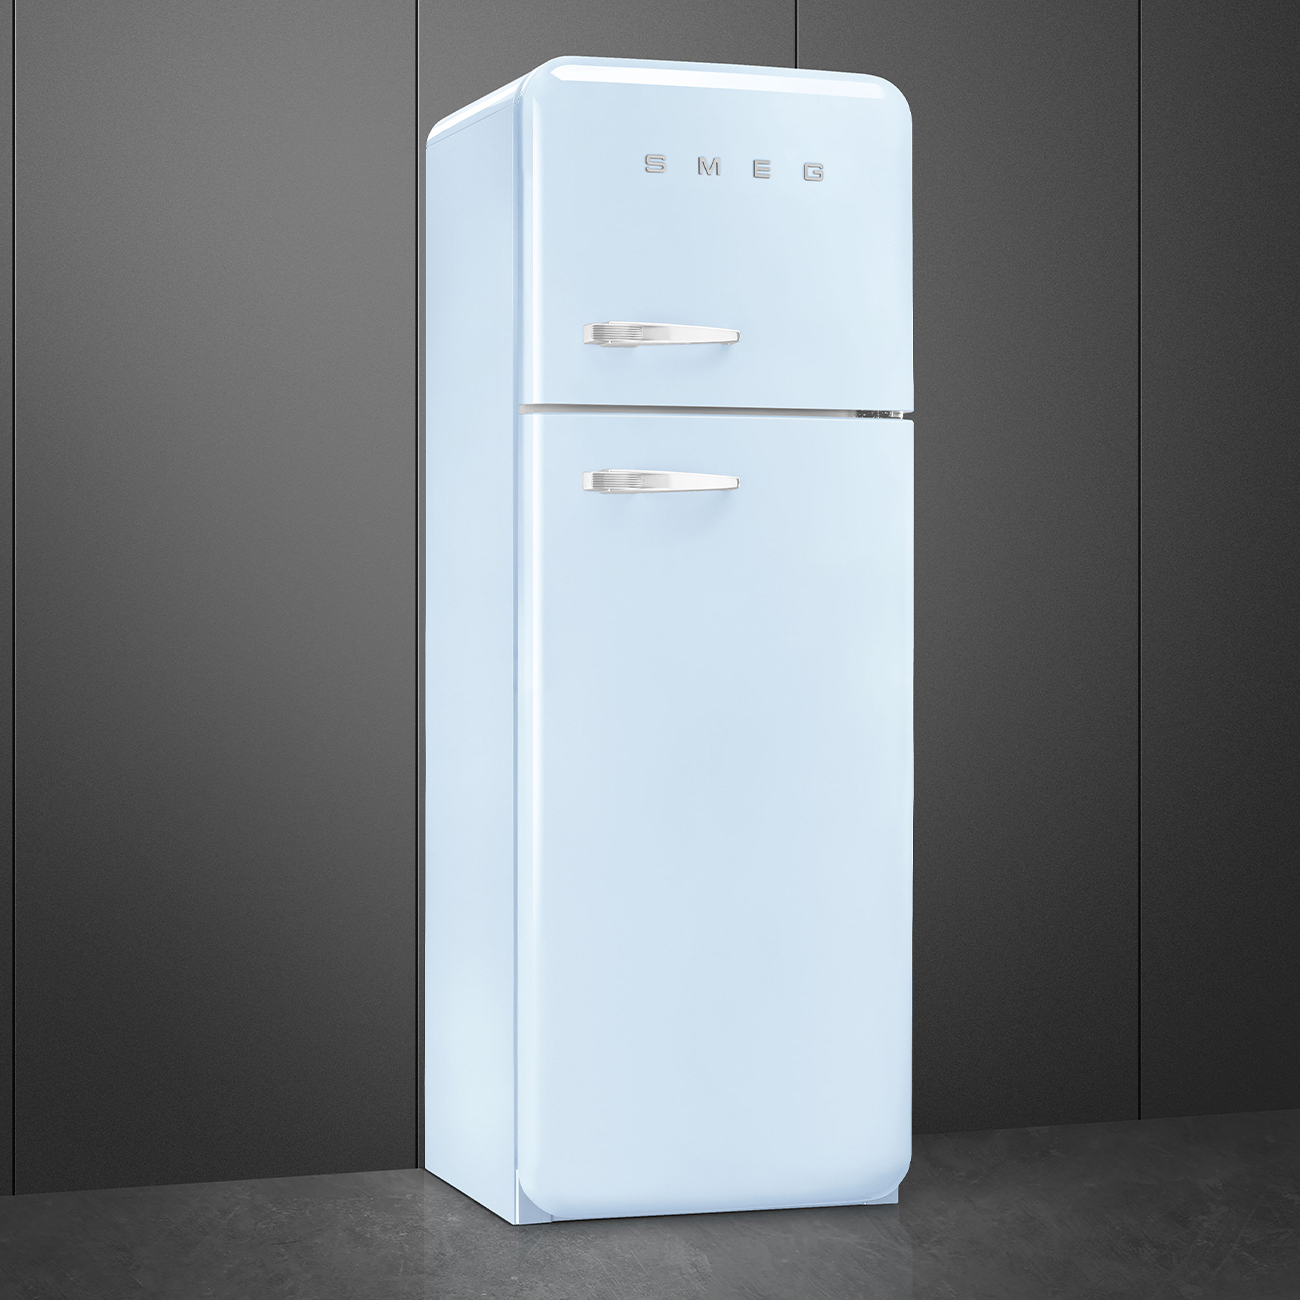 Pastel blue refrigerator - Smeg_3